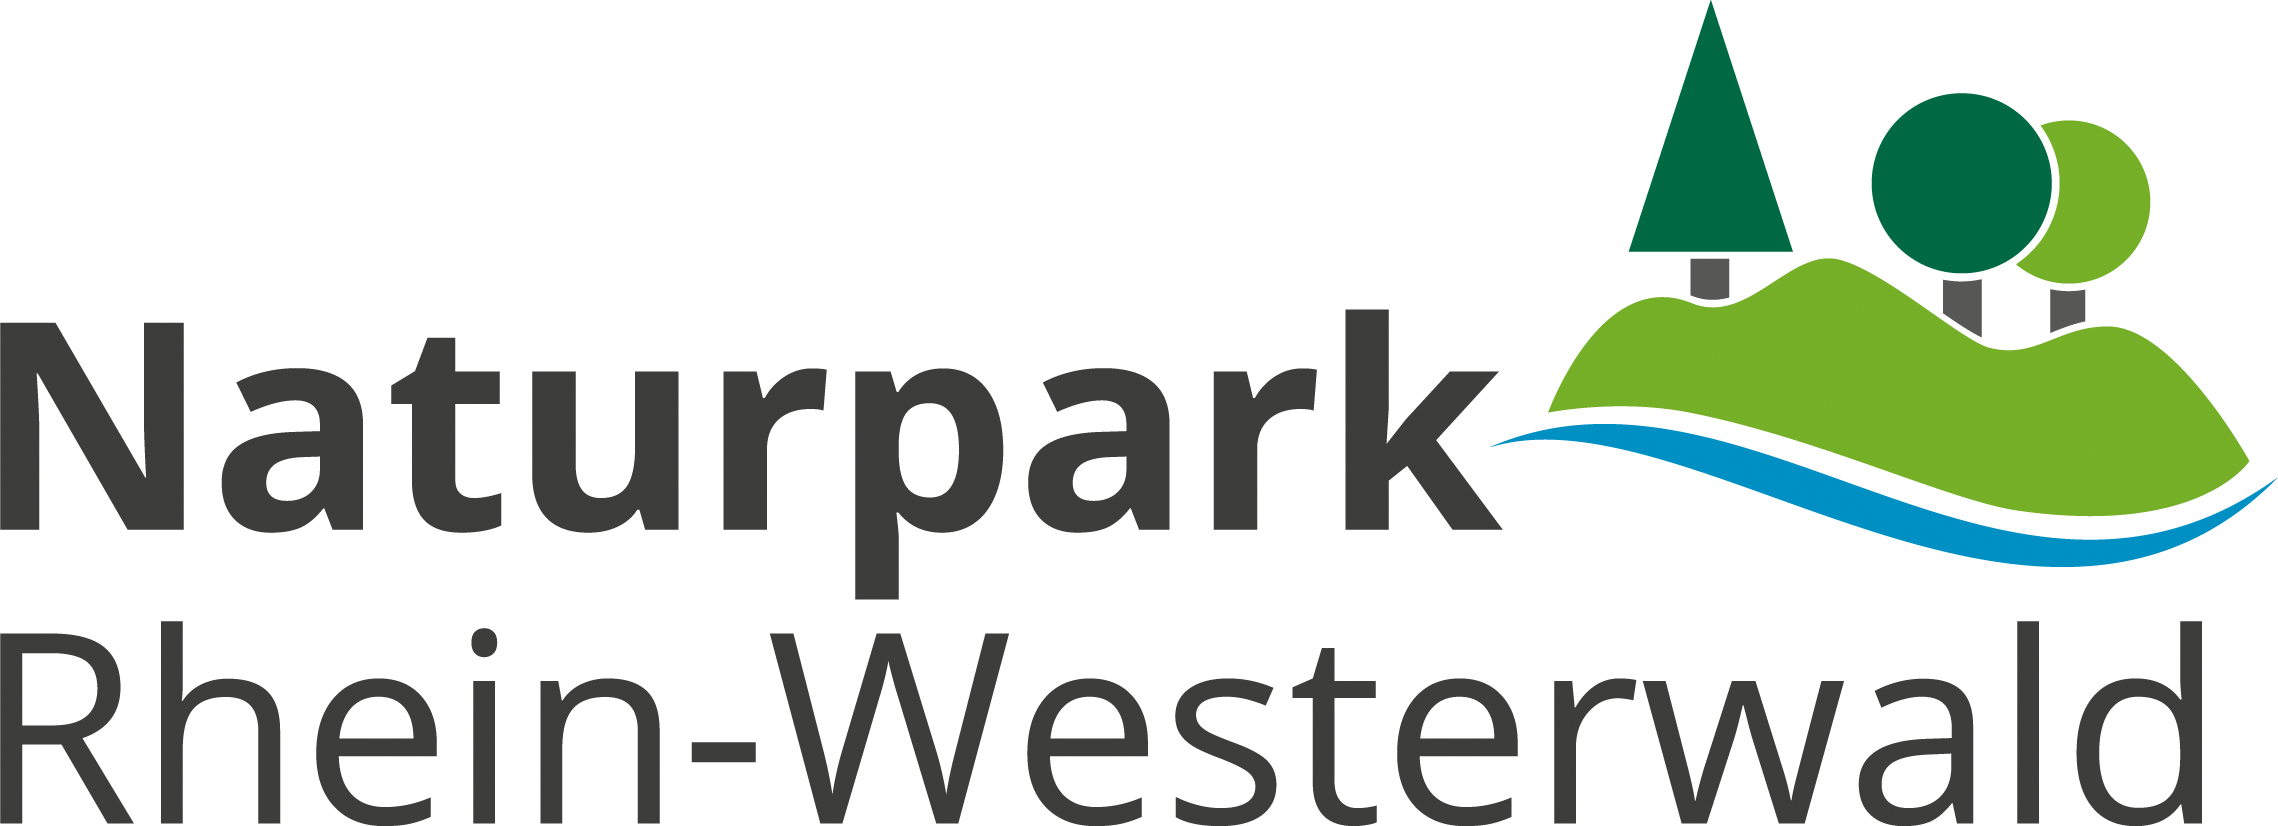 Naturpark logo